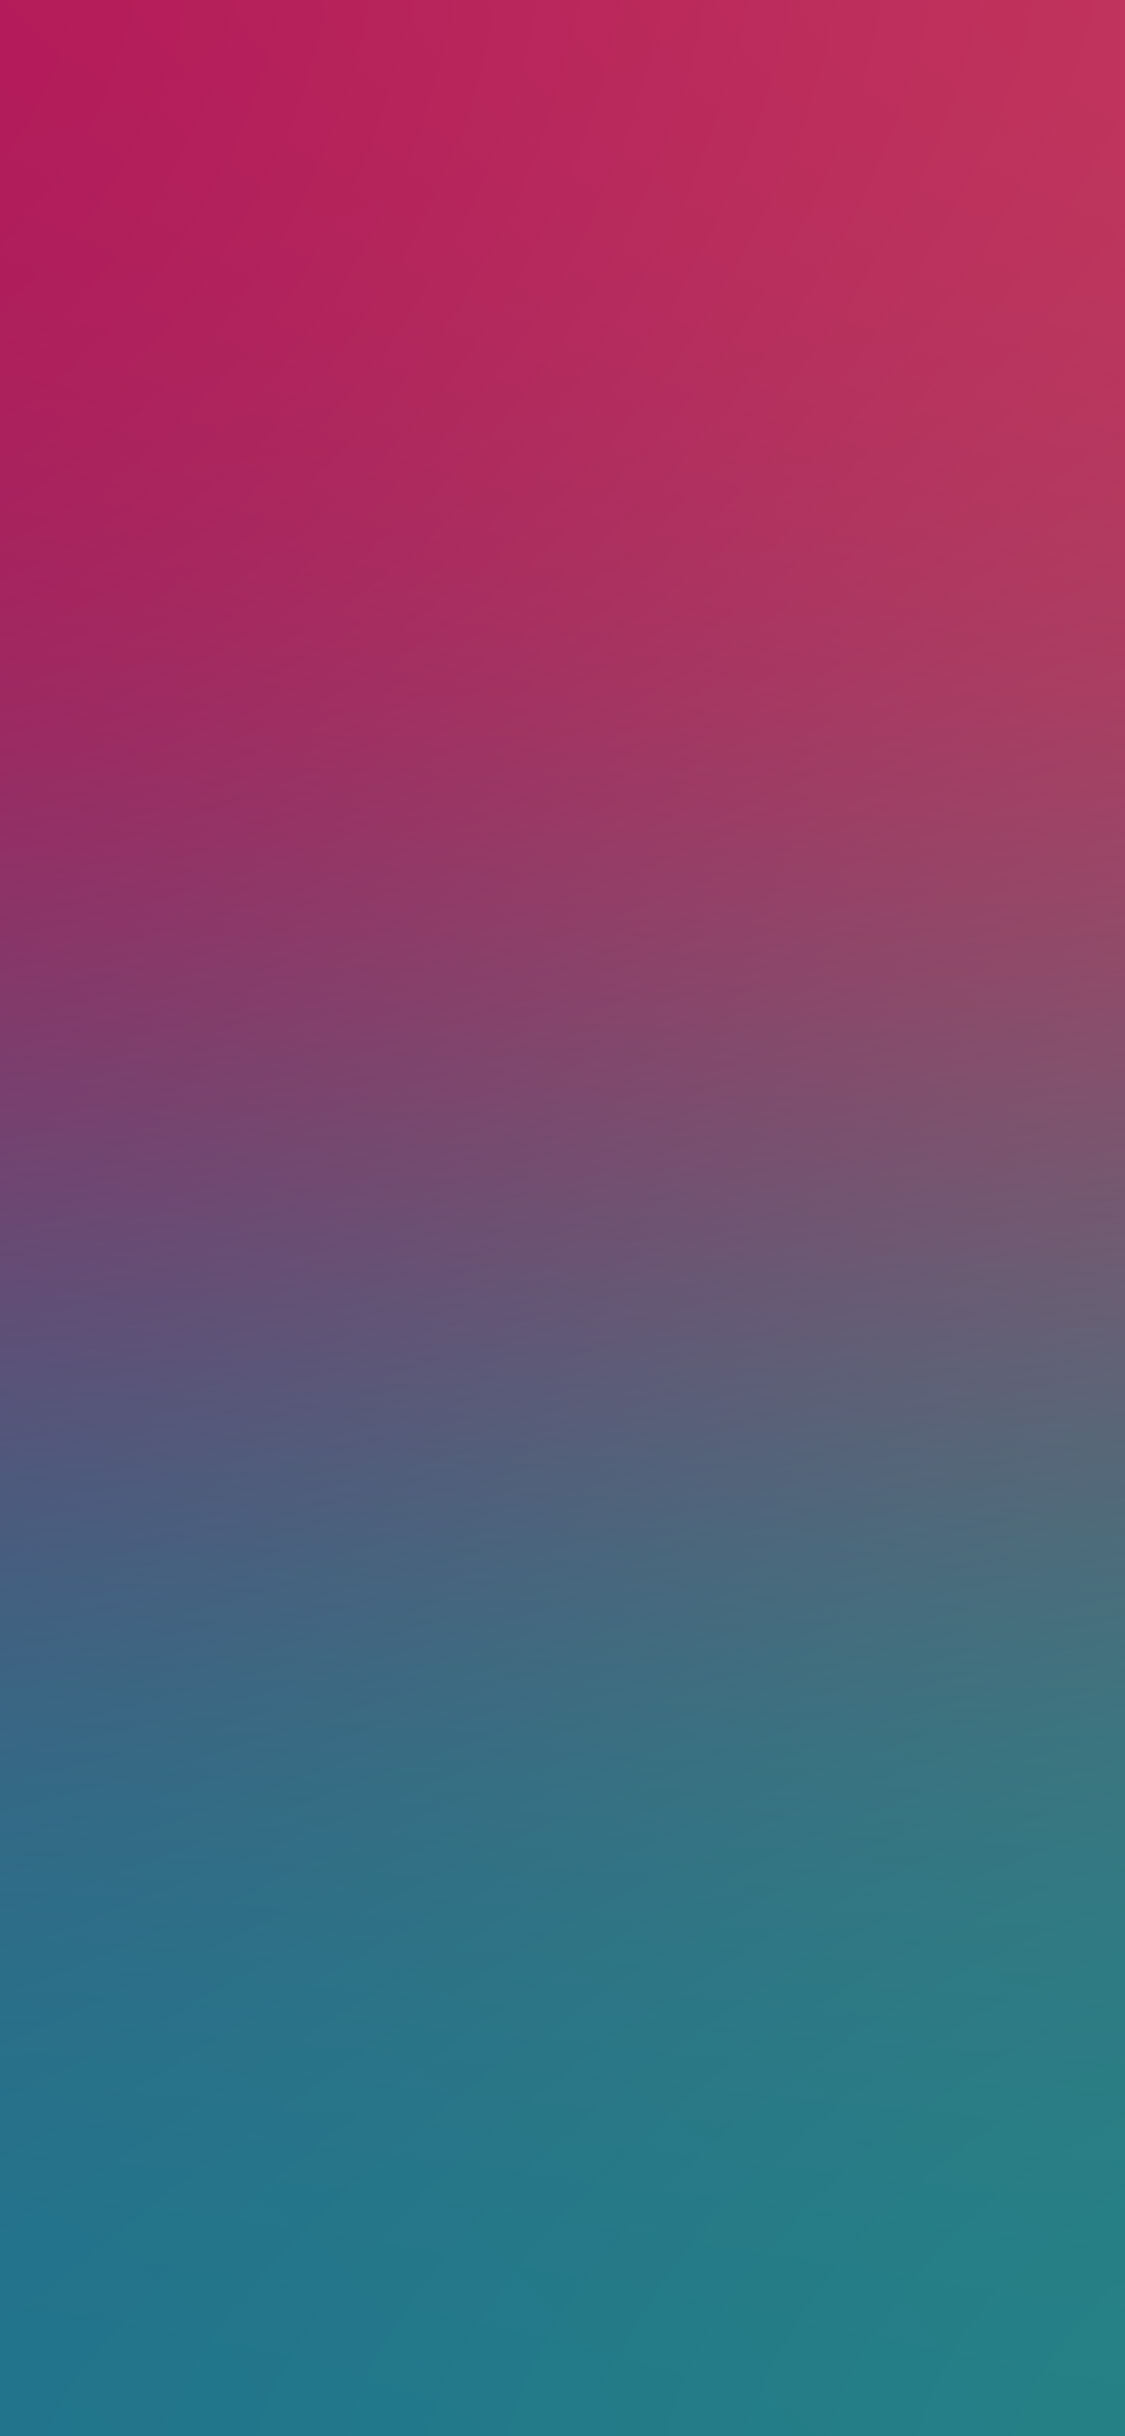 Iphone Wallpaper Hd Green Pink , HD Wallpaper & Backgrounds